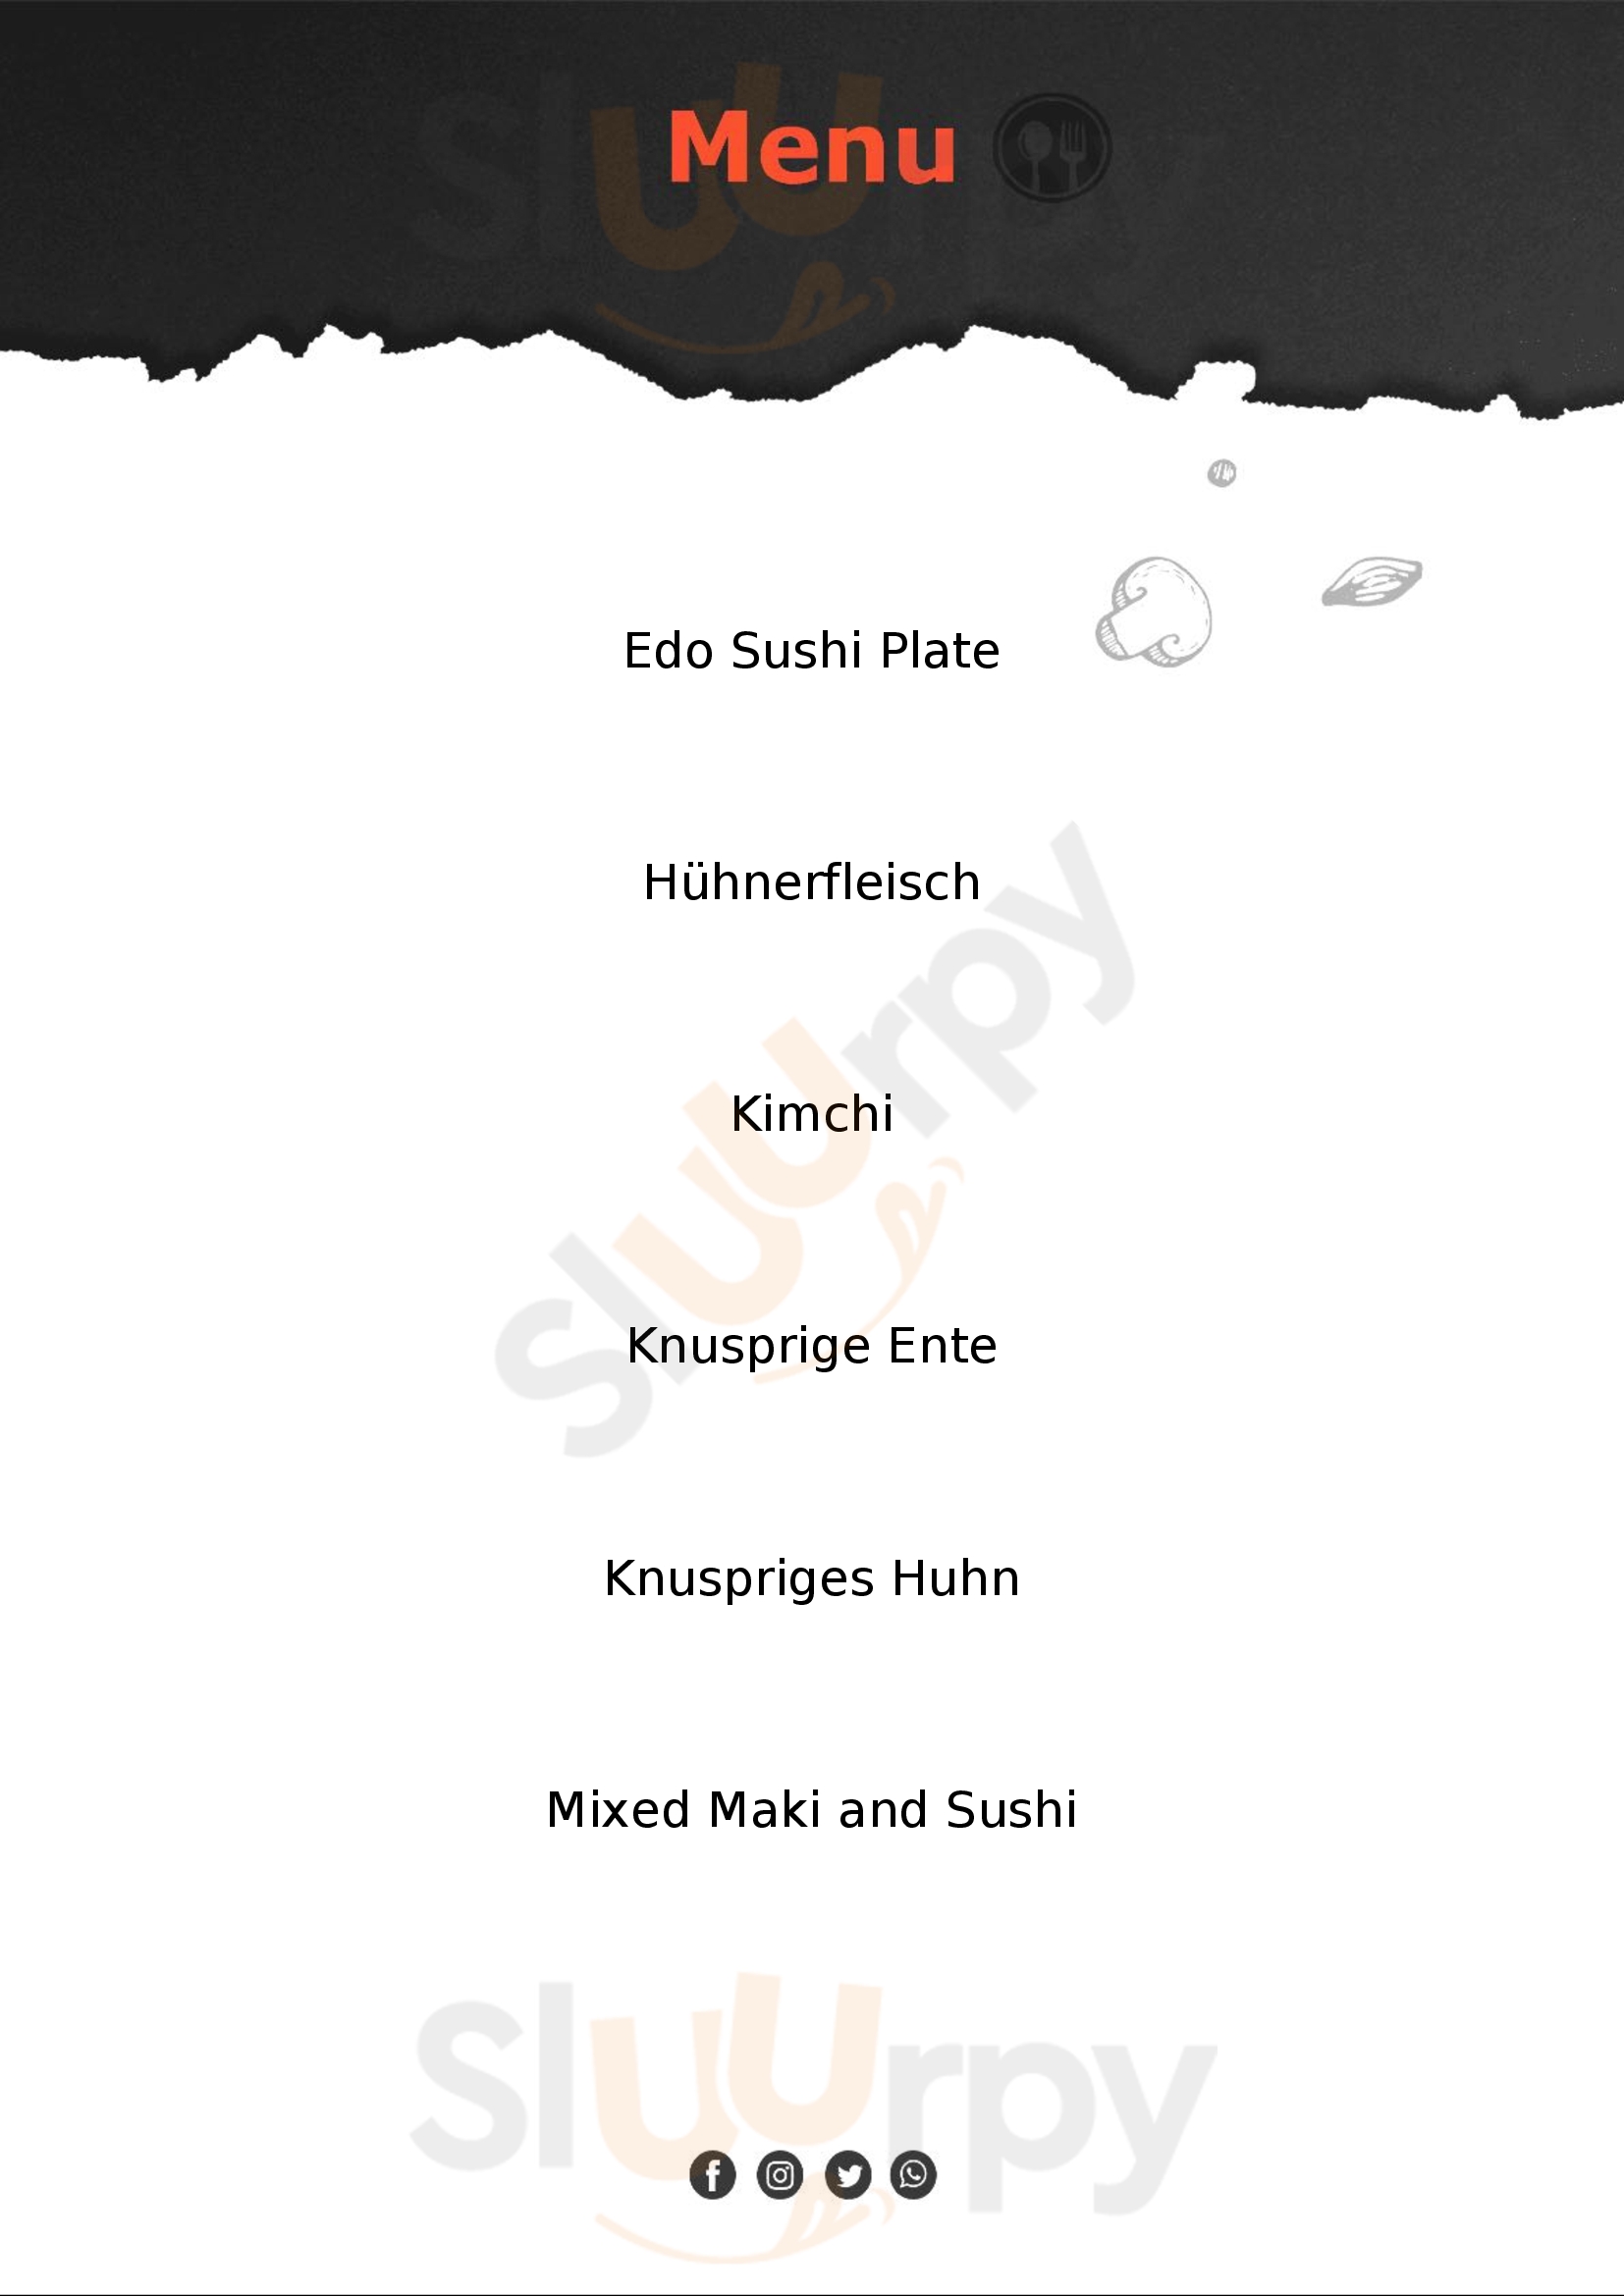 Edo Sushi Wien Wien Menu - 1